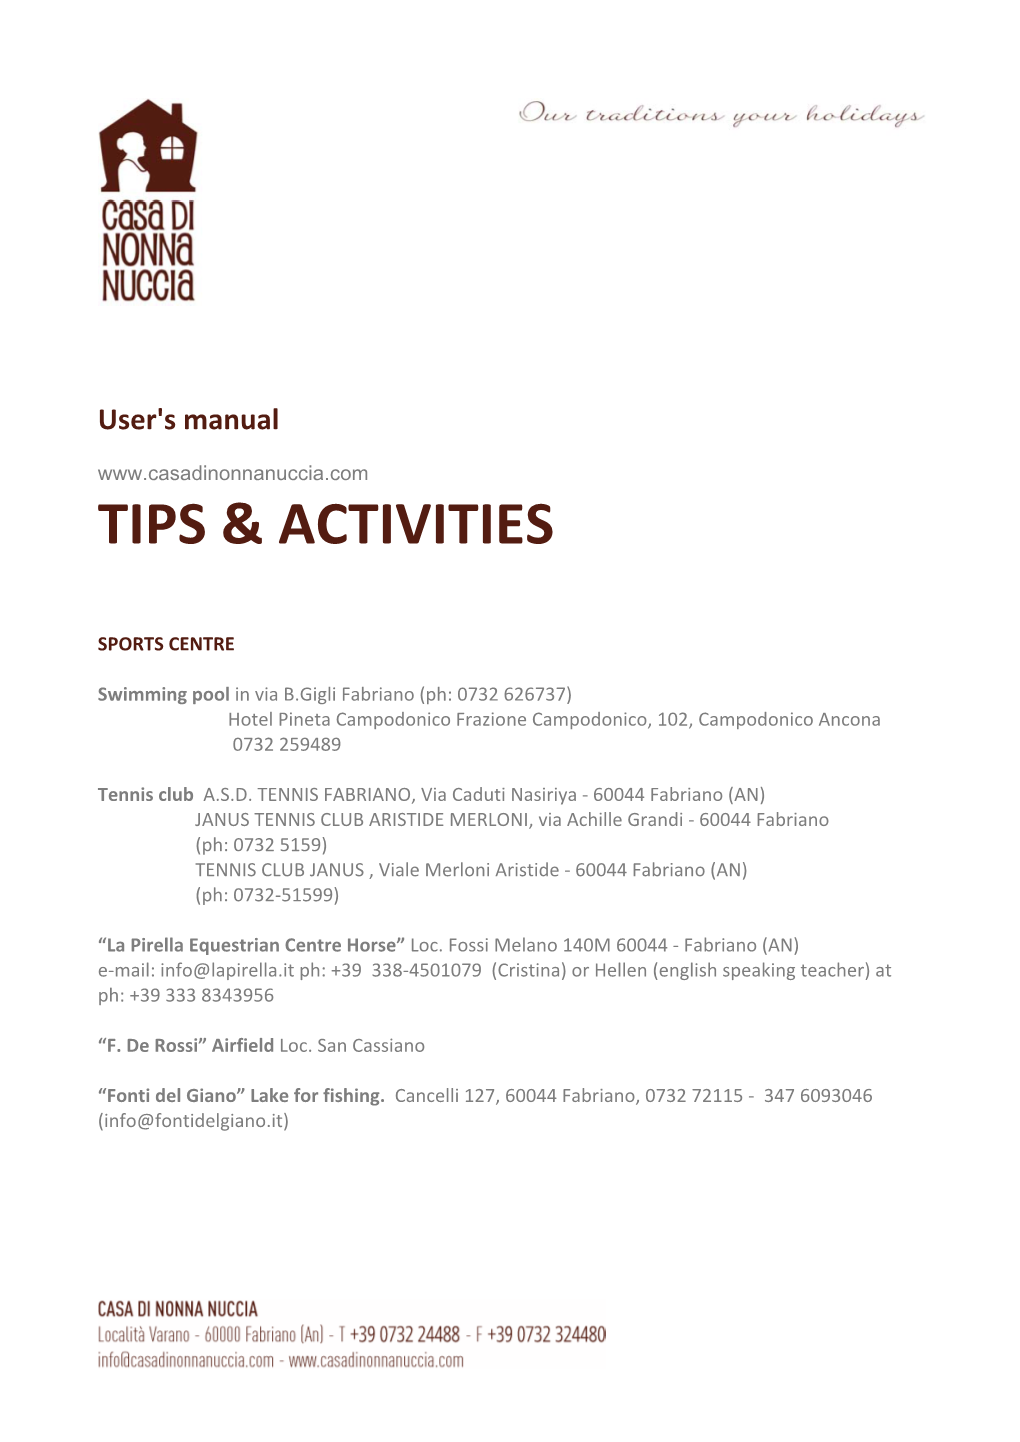 Tips & Activities